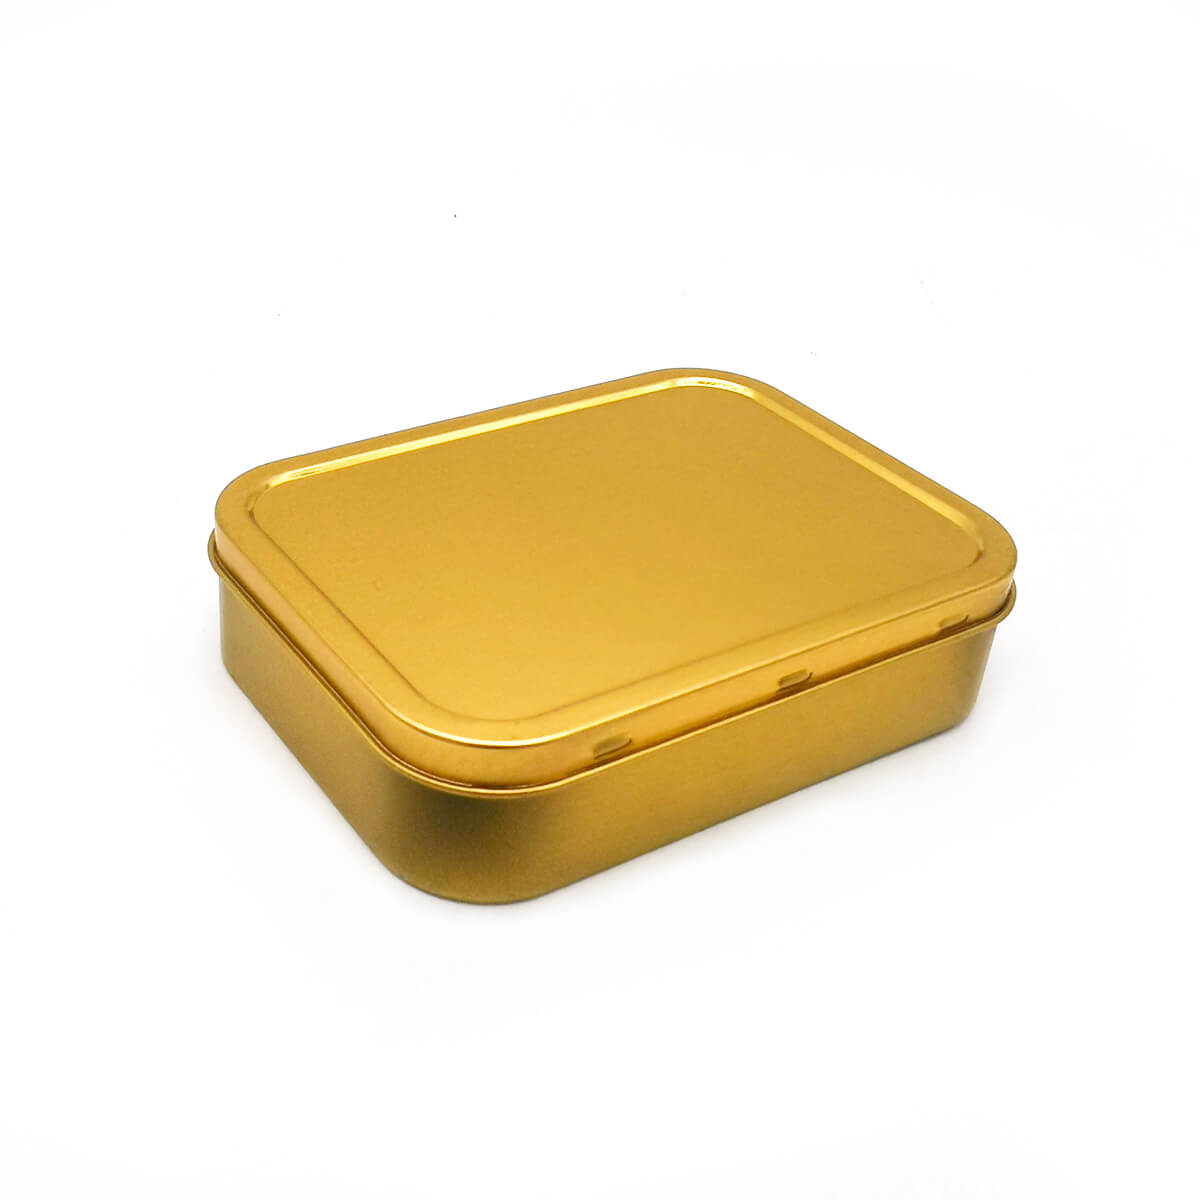 2oz (125ml) Герметичный золотой и серебряный цвет табак жестяная коробка